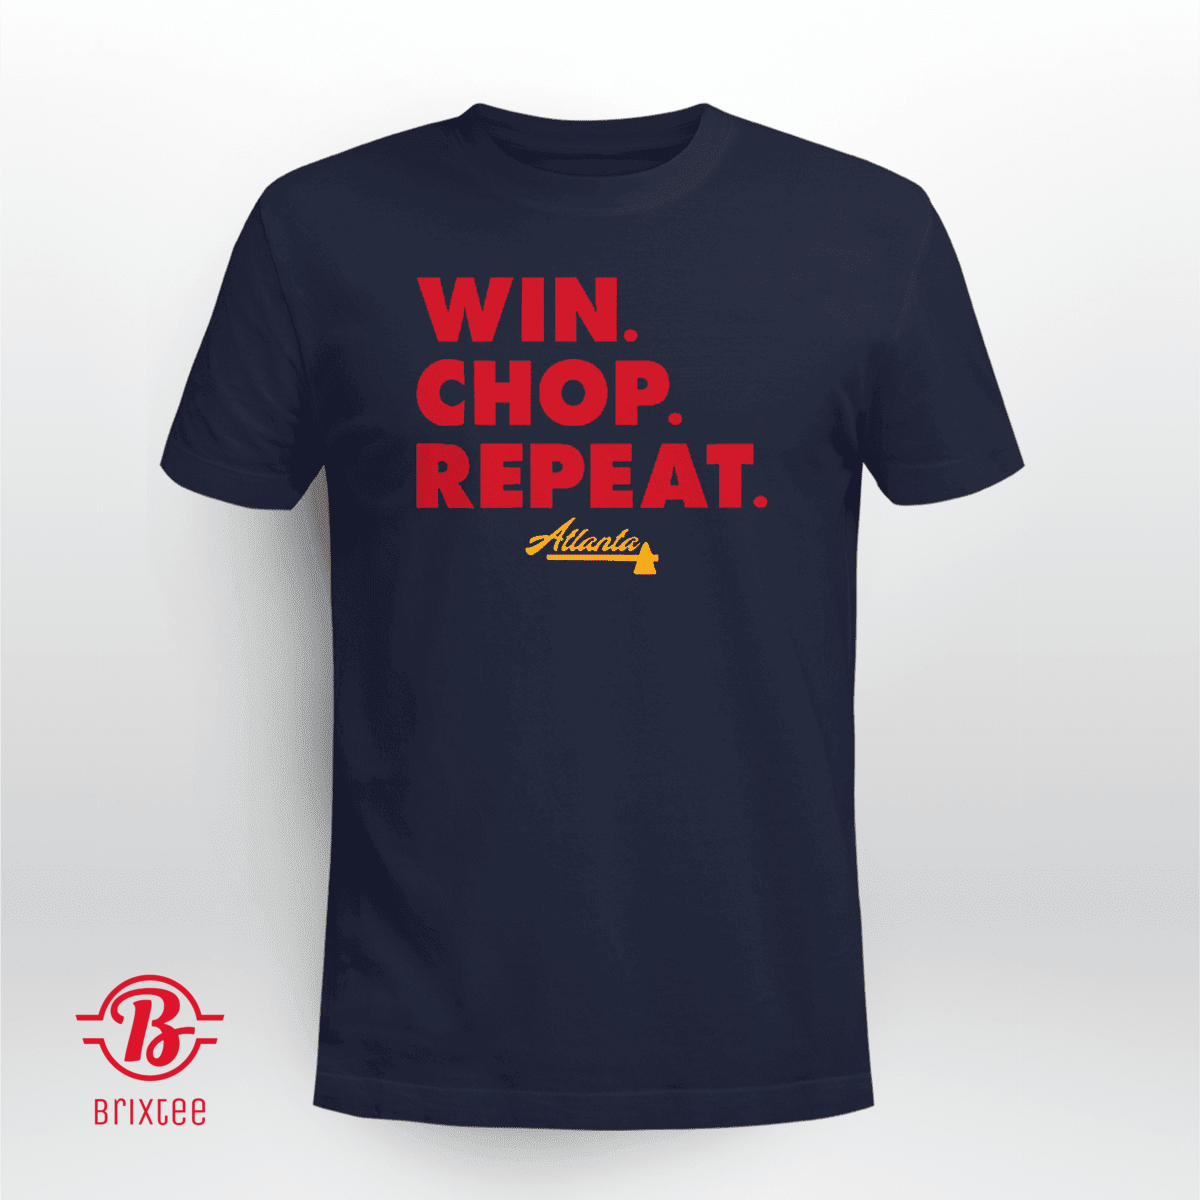 Atlanta Braves Win. Chop. Repeat.